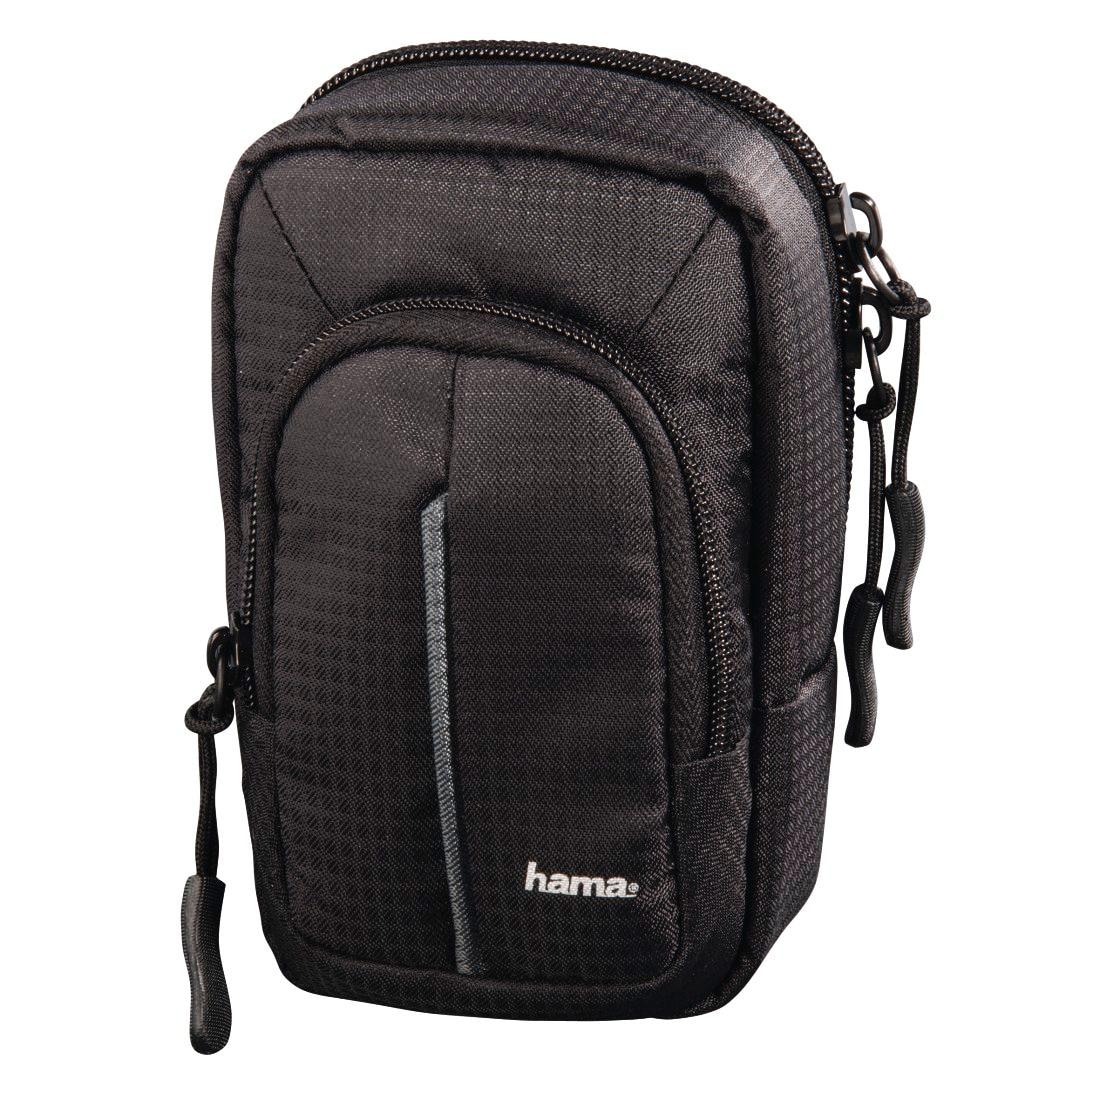 Hama Kameratasche »Tasche für Digitalkameras mit Gürtelschlaufe Fancy Urban«, Größe 80M